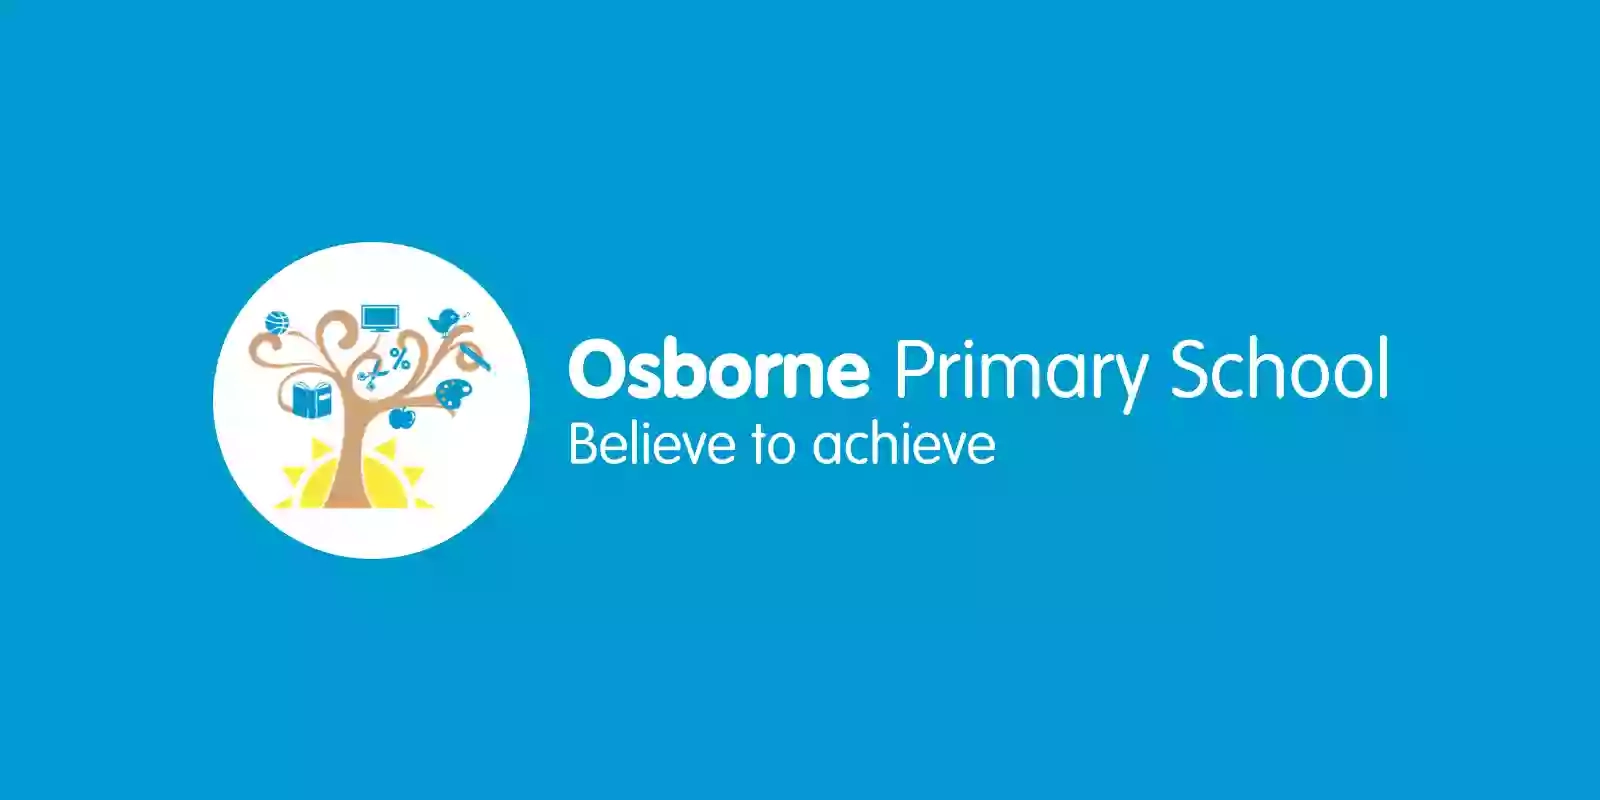 Osborne Primary School